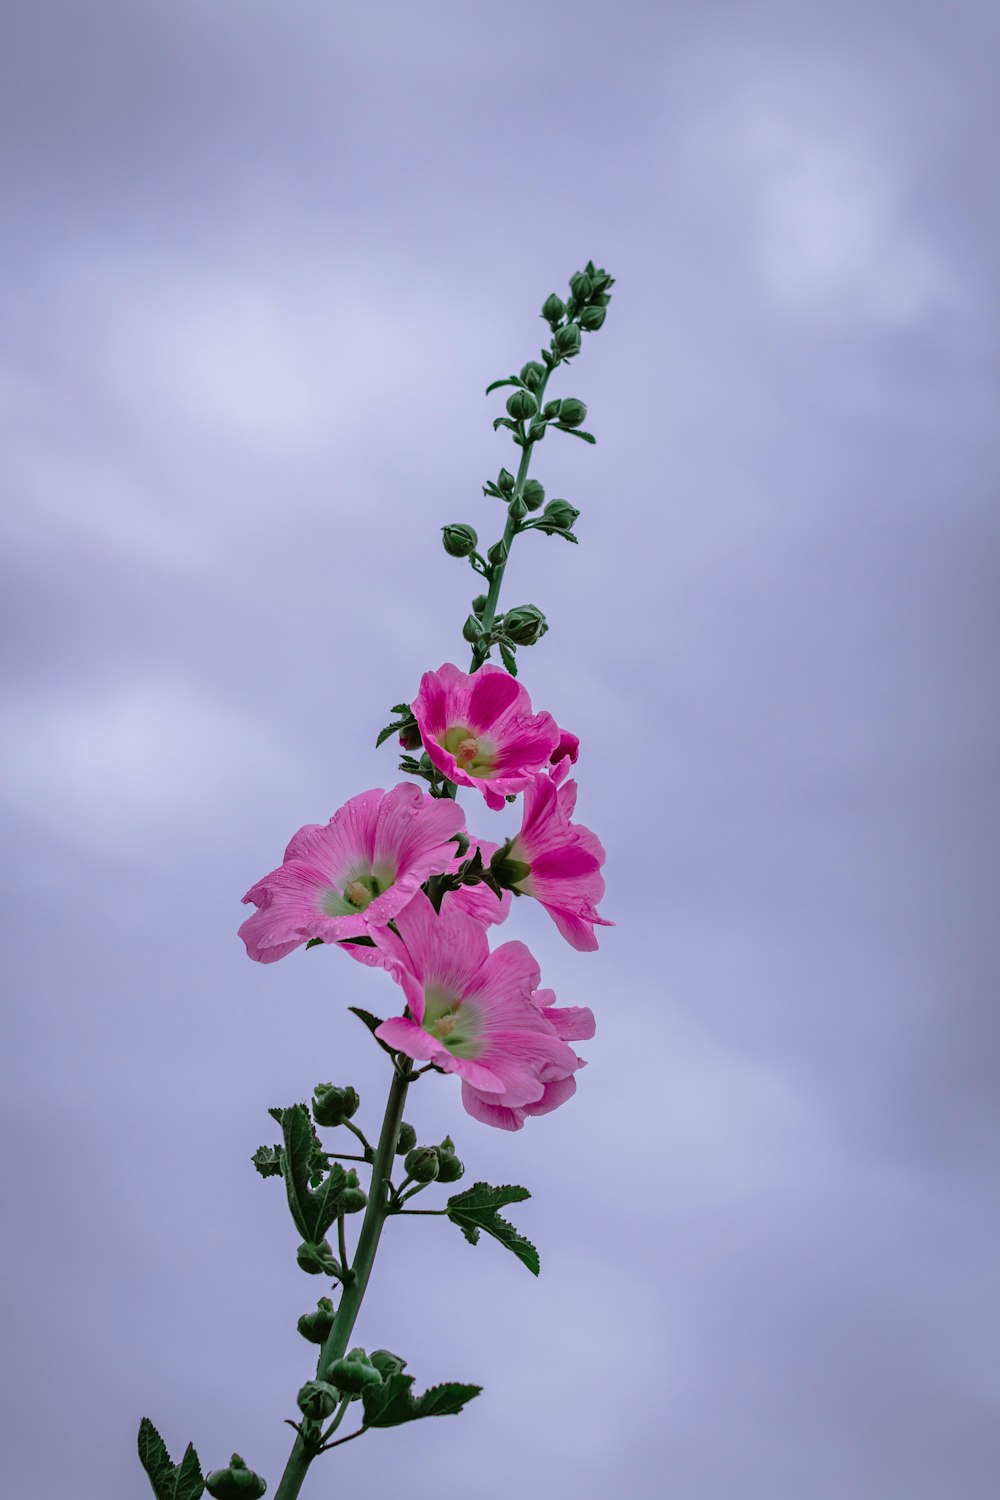 fiore rosa sotto il cielo nuvoloso durante il giorno